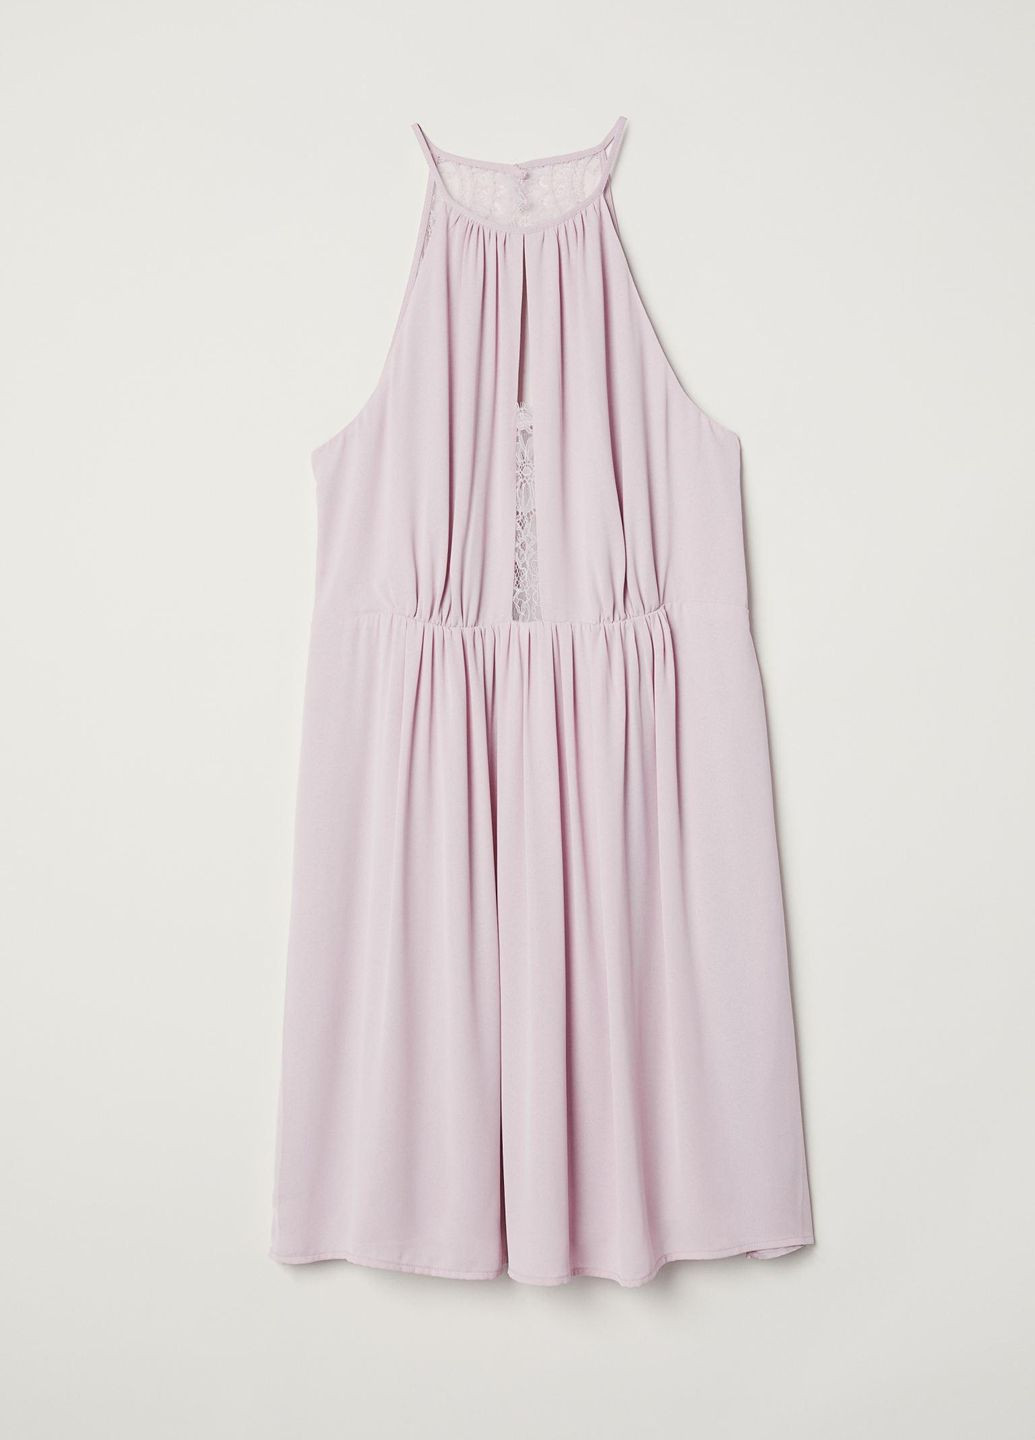 Сиреневое платье лето,бледно-сиреневый, H&M